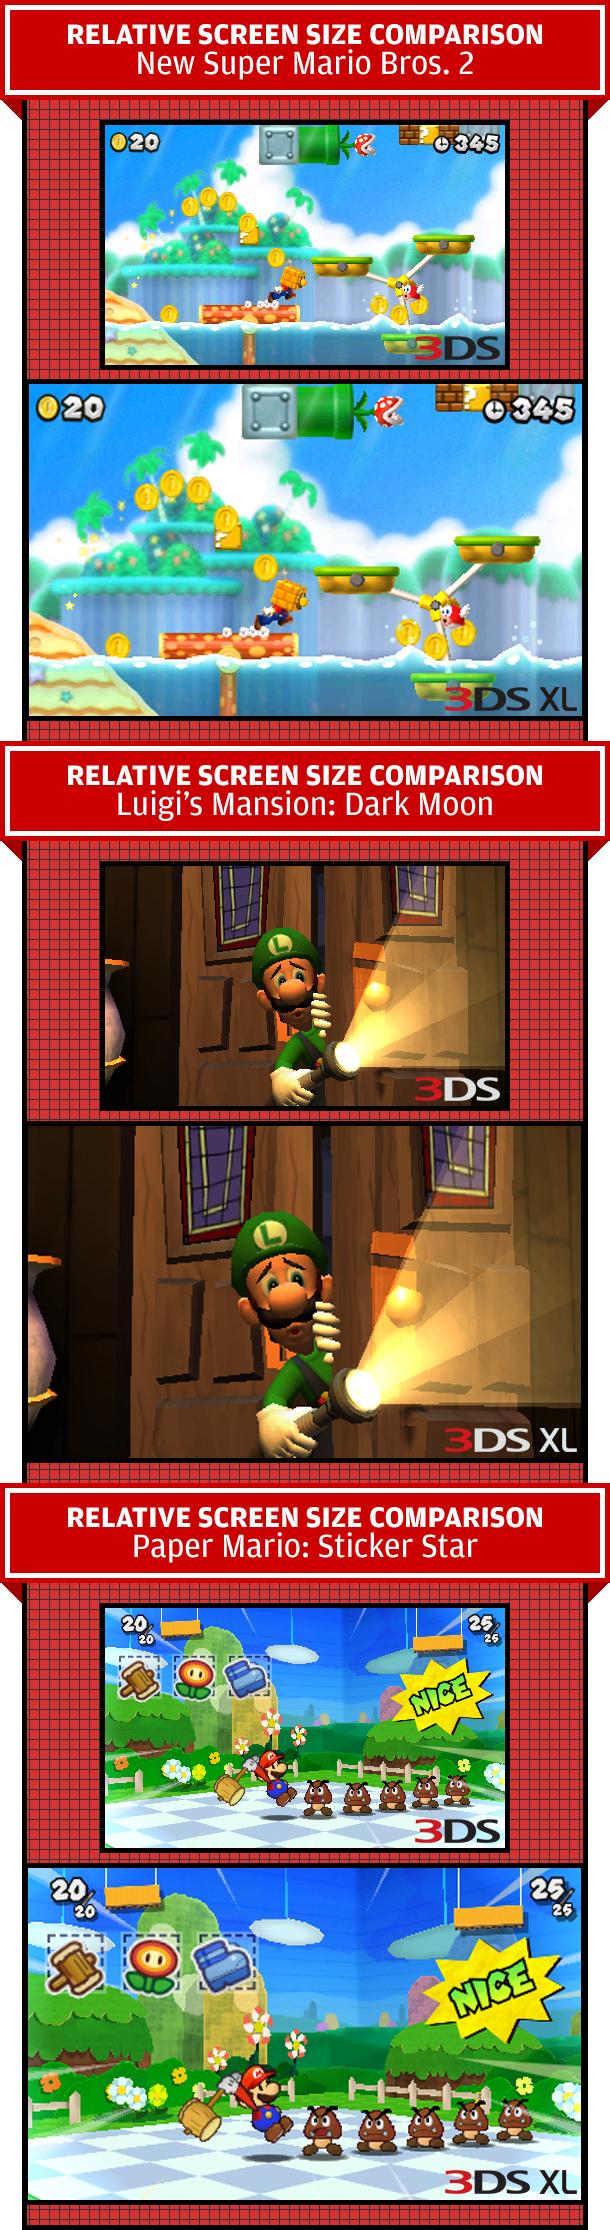 Quatre images de comparaisons entre la 3DS et la 3DS XL